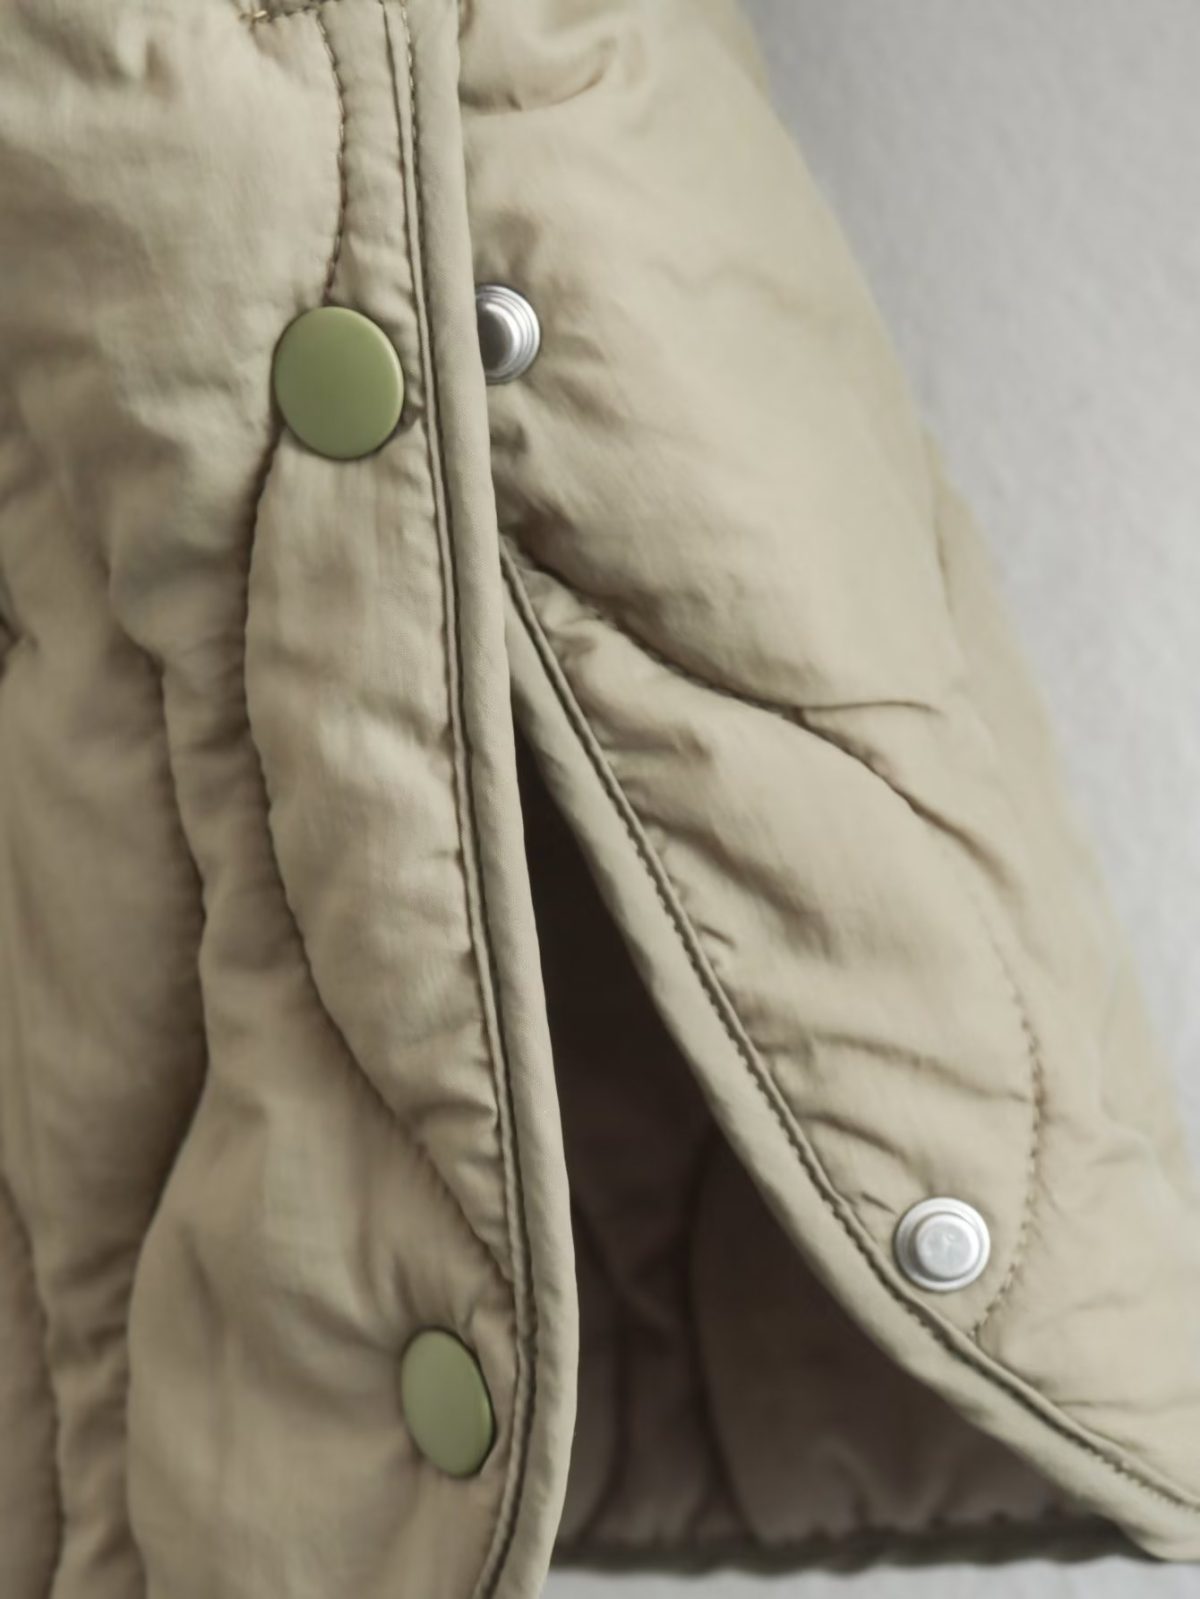 Autumn Winter Cotton Quilted Coat - Coats & Jackets - Uniqistic.com